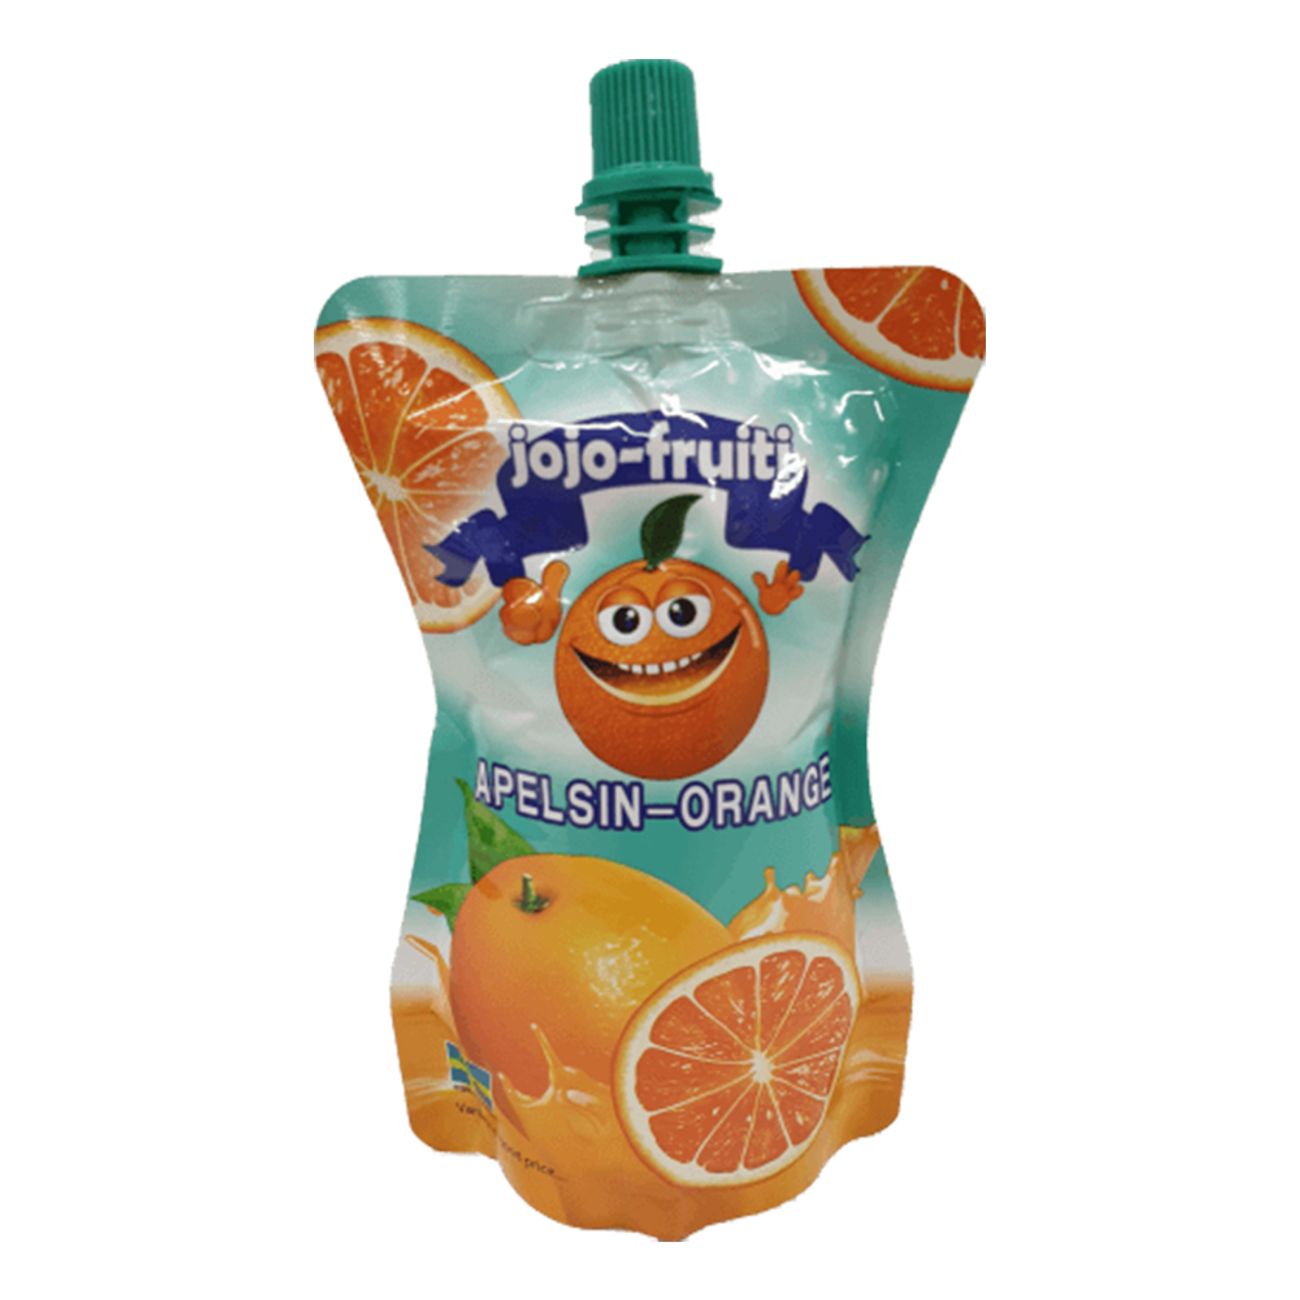 jojo-fruit-apelsin-92760-1